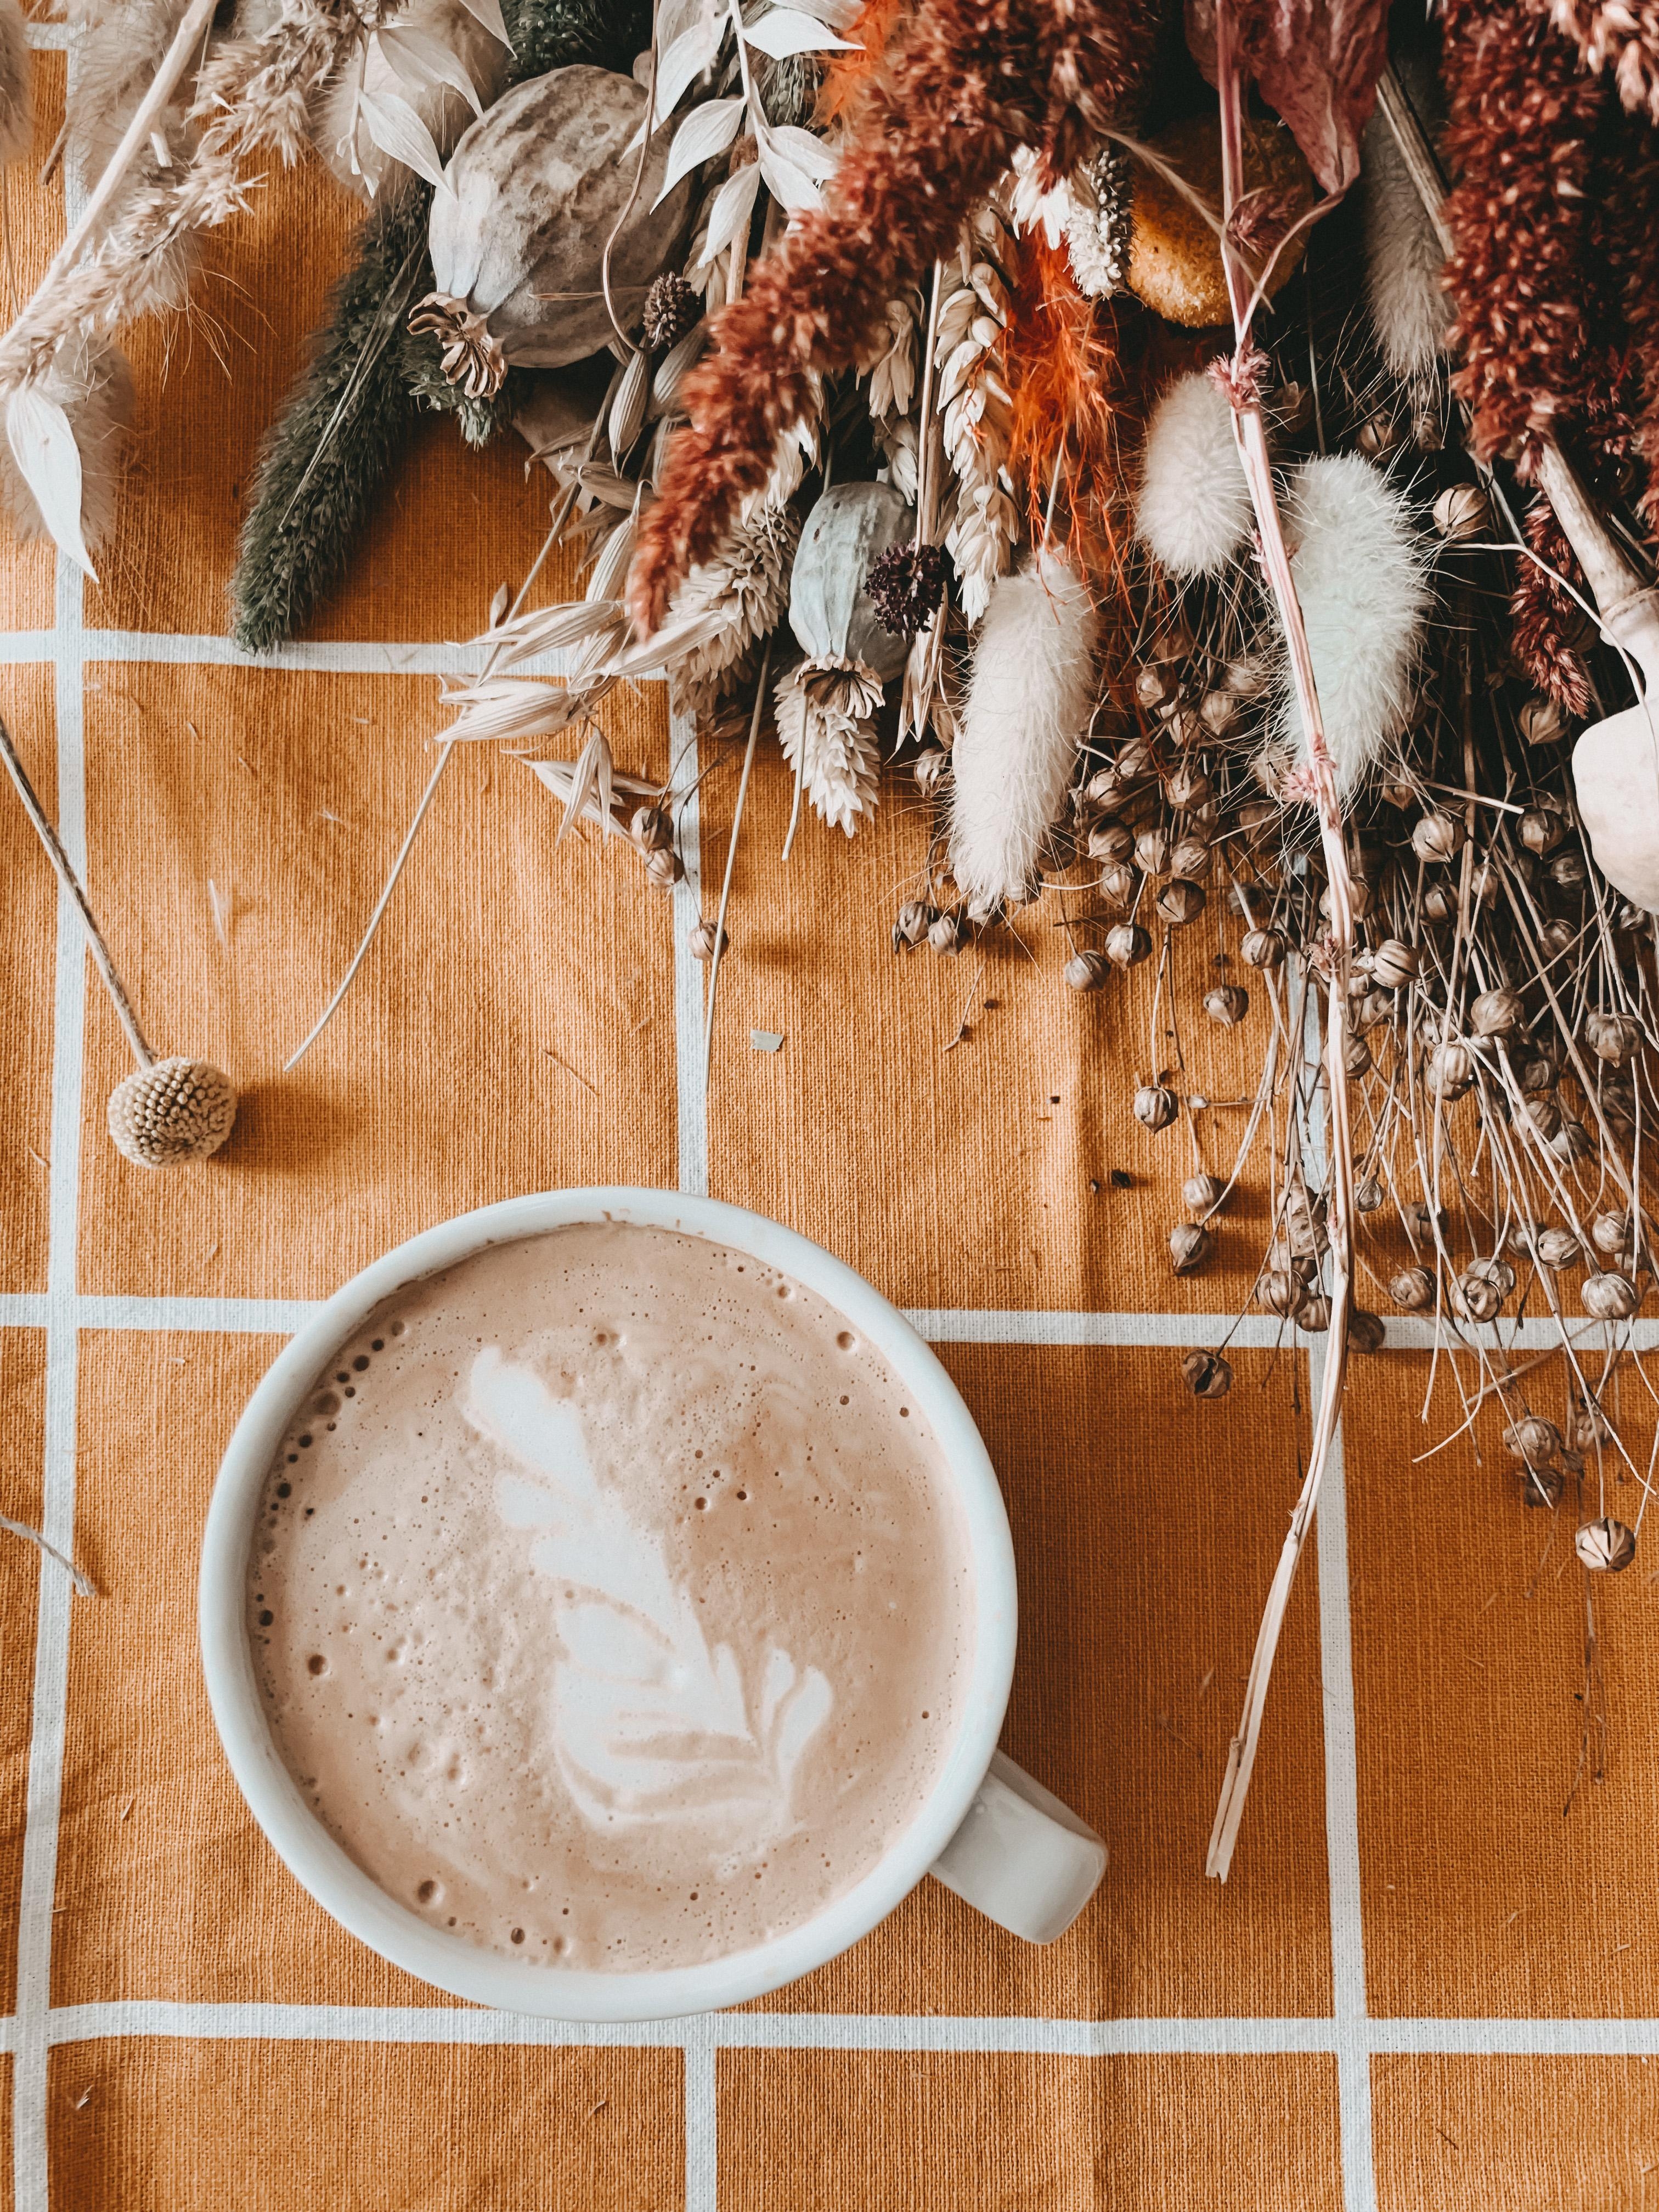 Kaffee gefällig???
Meine zwei große Leidenschaften:
Kaffee und Trockenblumen 🧡🤎💛
Was mögt ihr so? 